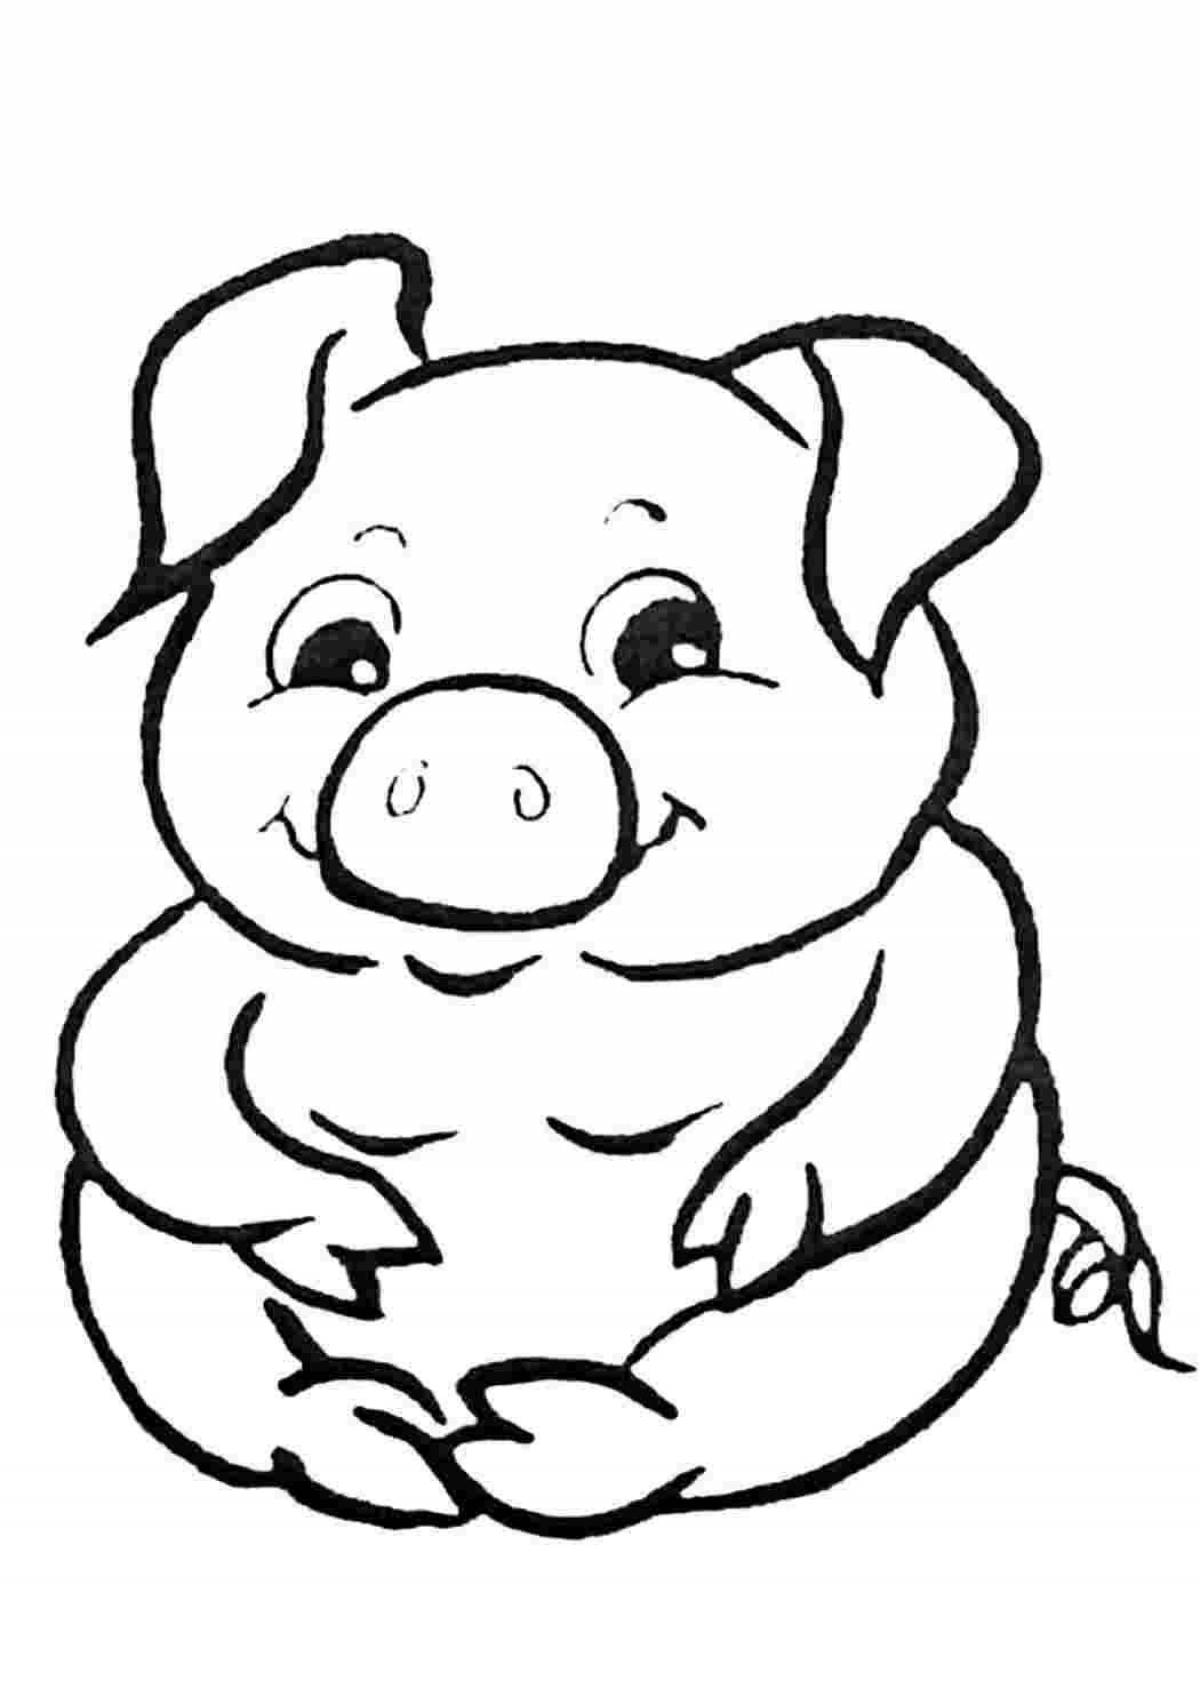 Snuggable coloring page piggy